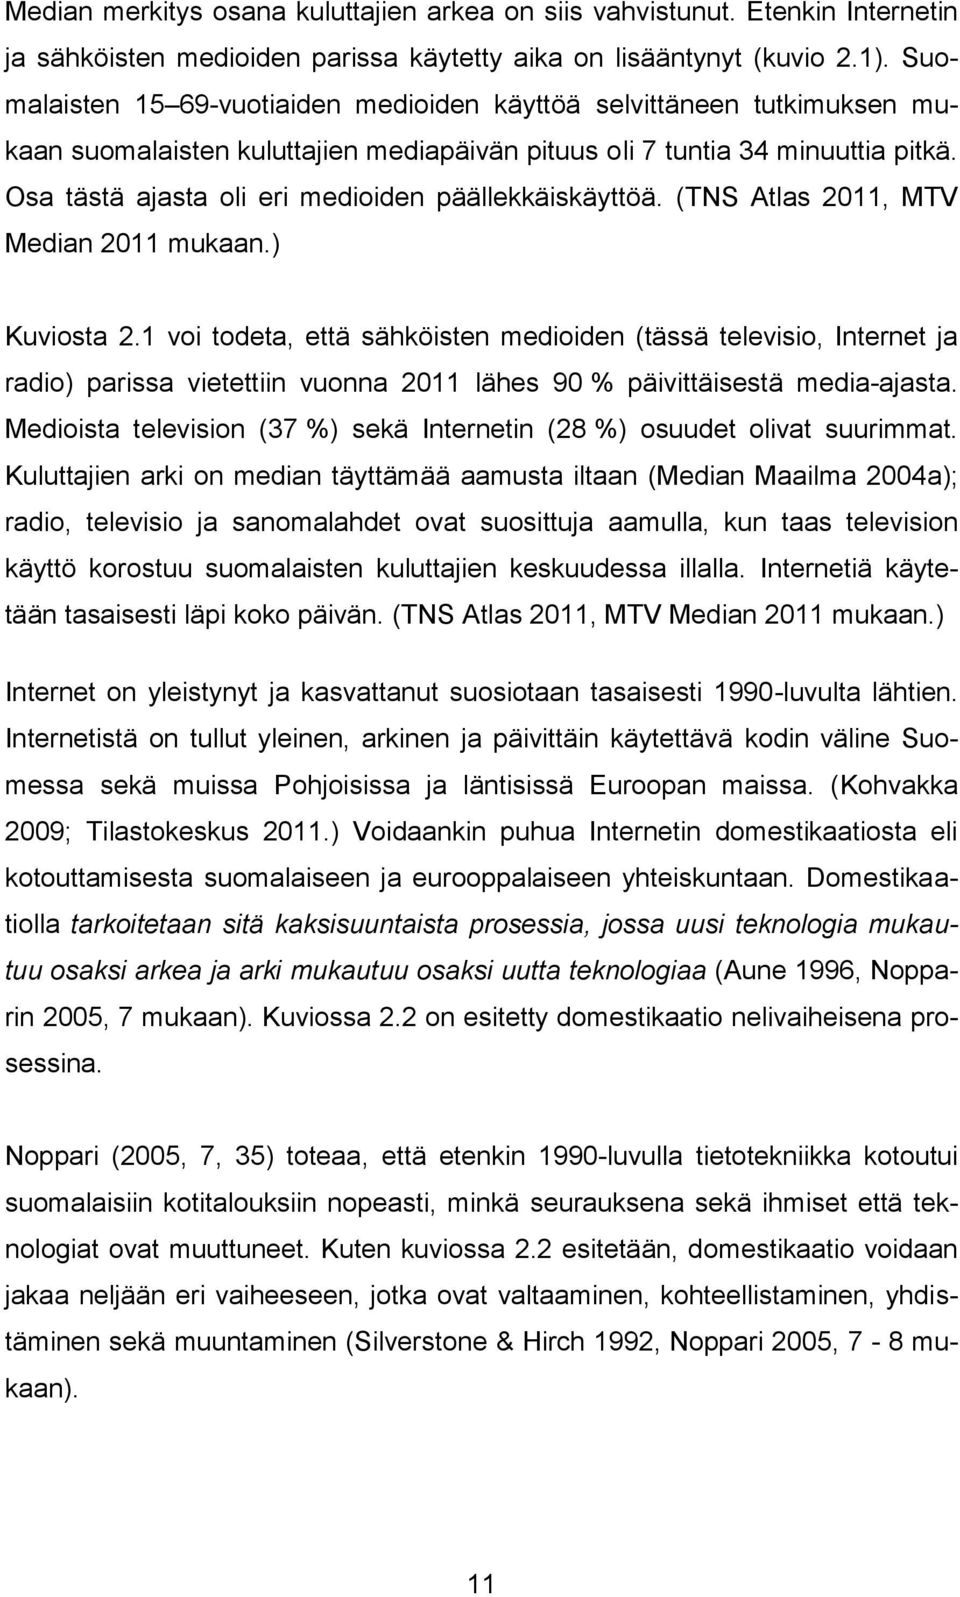 Osa tästä ajasta oli eri medioiden päällekkäiskäyttöä. (TNS Atlas 2011, MTV Median 2011 mukaan.) Kuviosta 2.